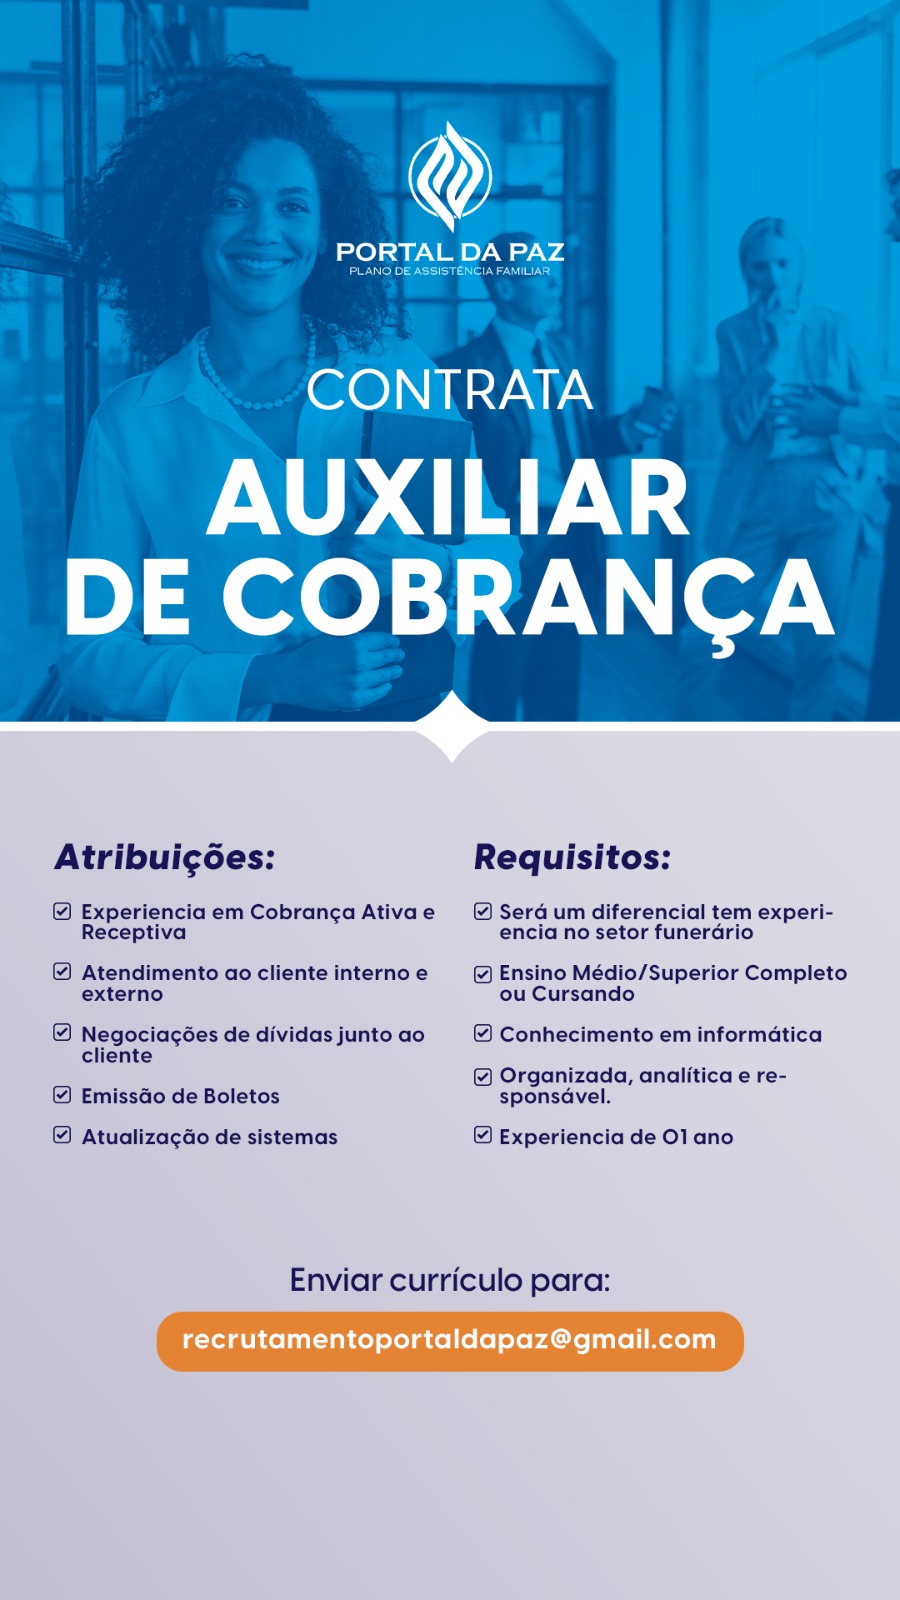 AUXILIAR DE COBRANÇA em Fortaleza/CE